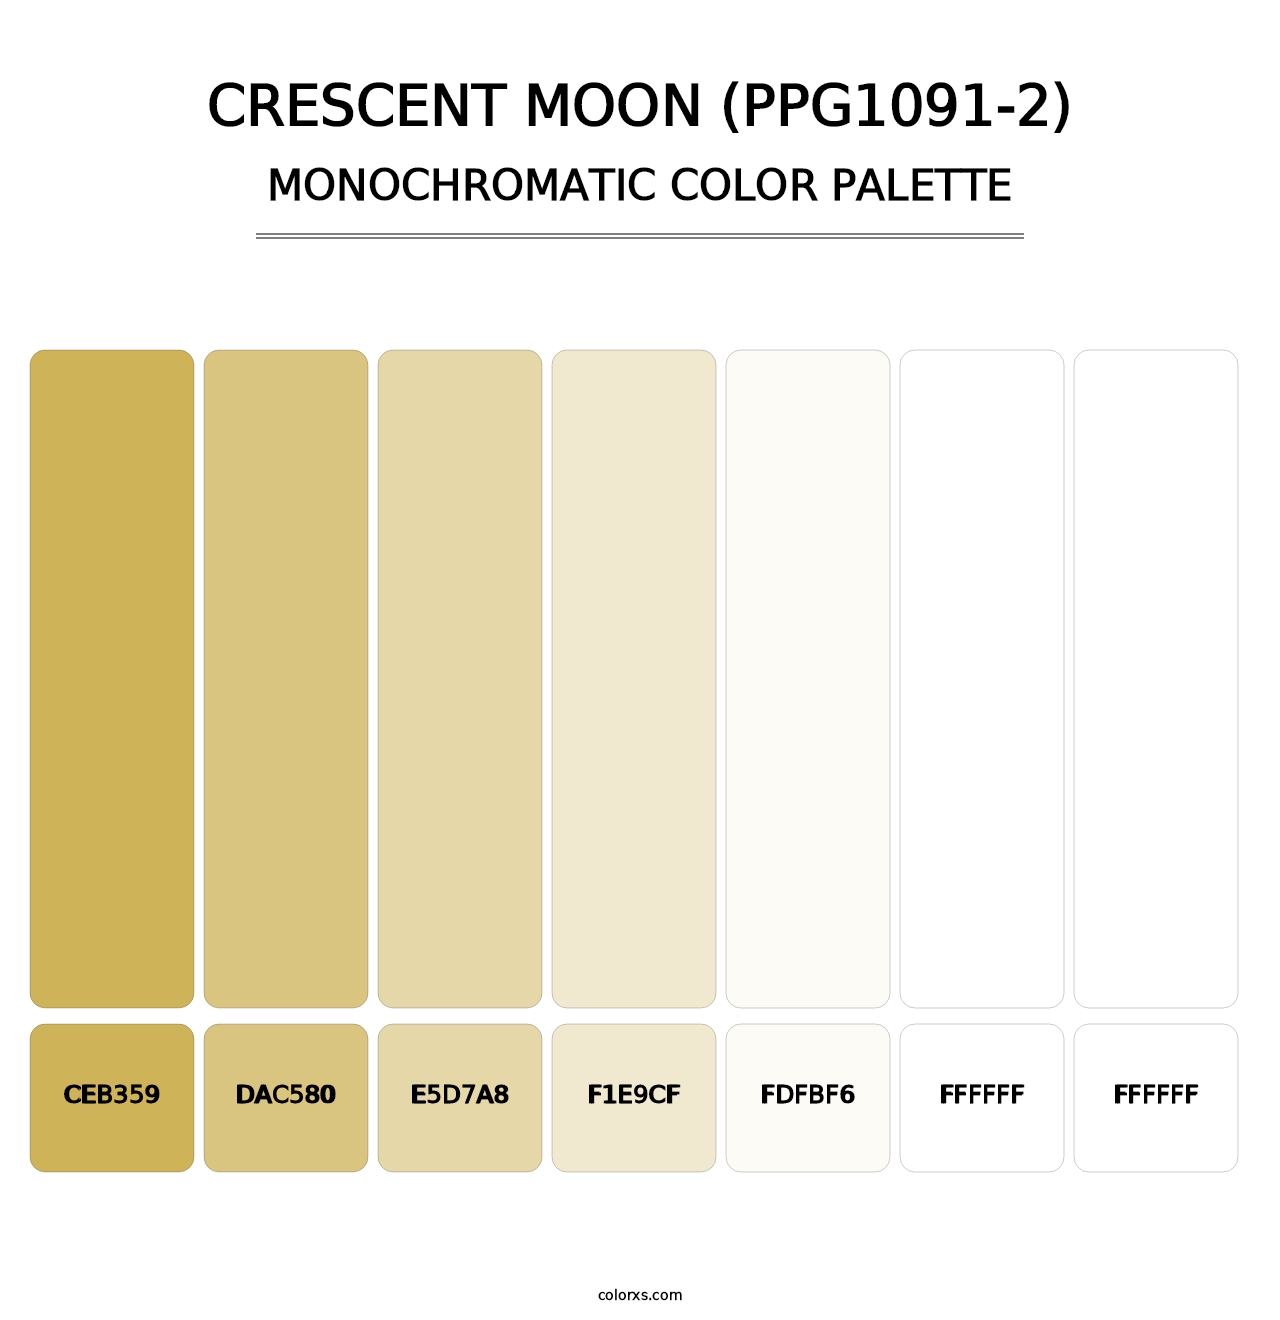 Crescent Moon (PPG1091-2) - Monochromatic Color Palette